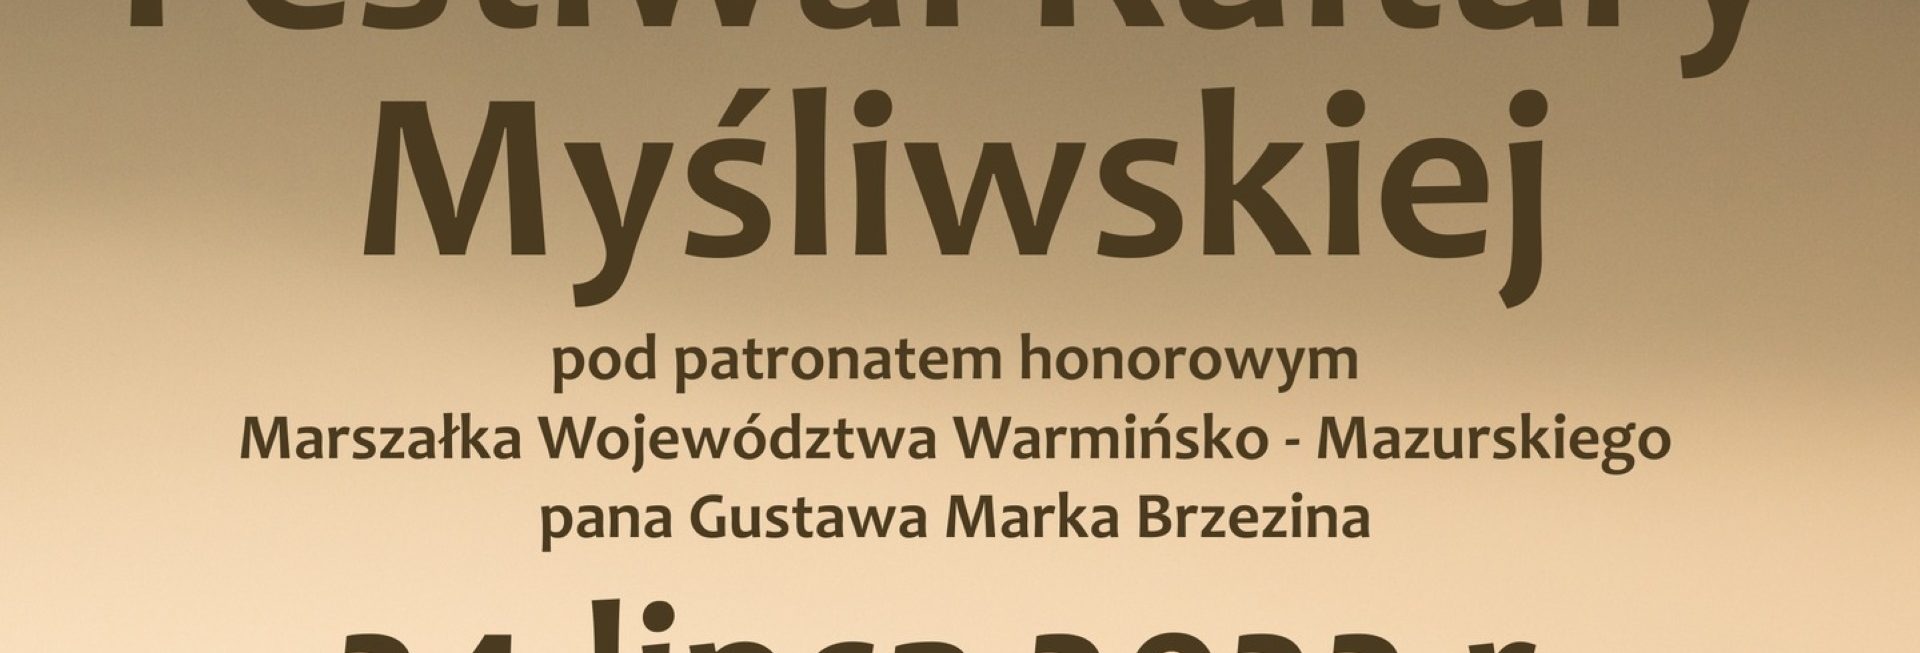 Plakat zapraszający do Lidzbarka Warmińskiego na kolejną edycję Festiwalu Kultury Myśliwskiej Lidzbark Warmiński 2022.